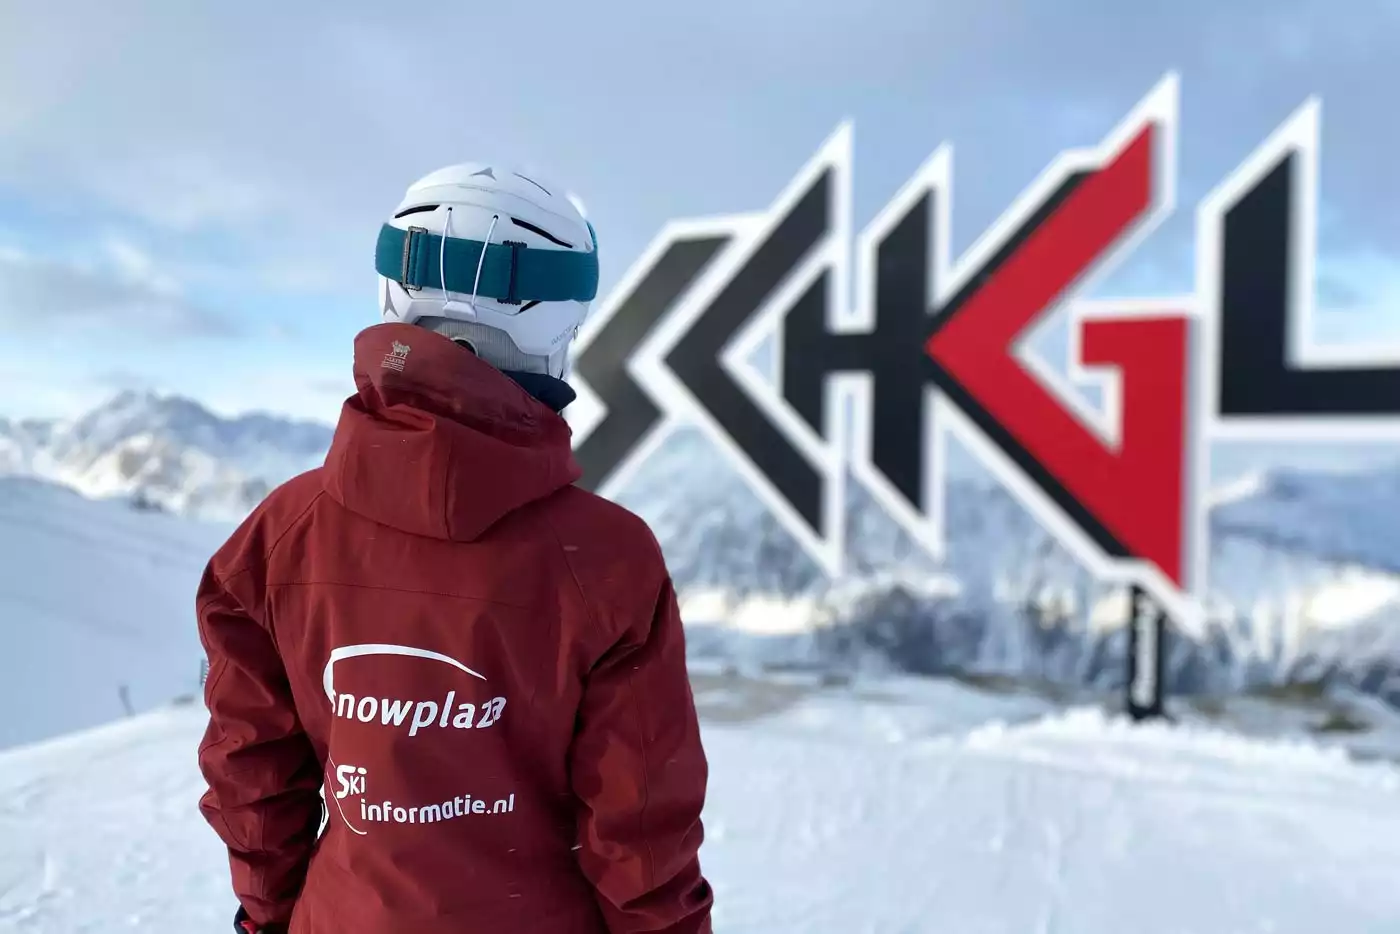 Wintersport in Ischgl sneeuwzekere skigebieden Oostenrijk